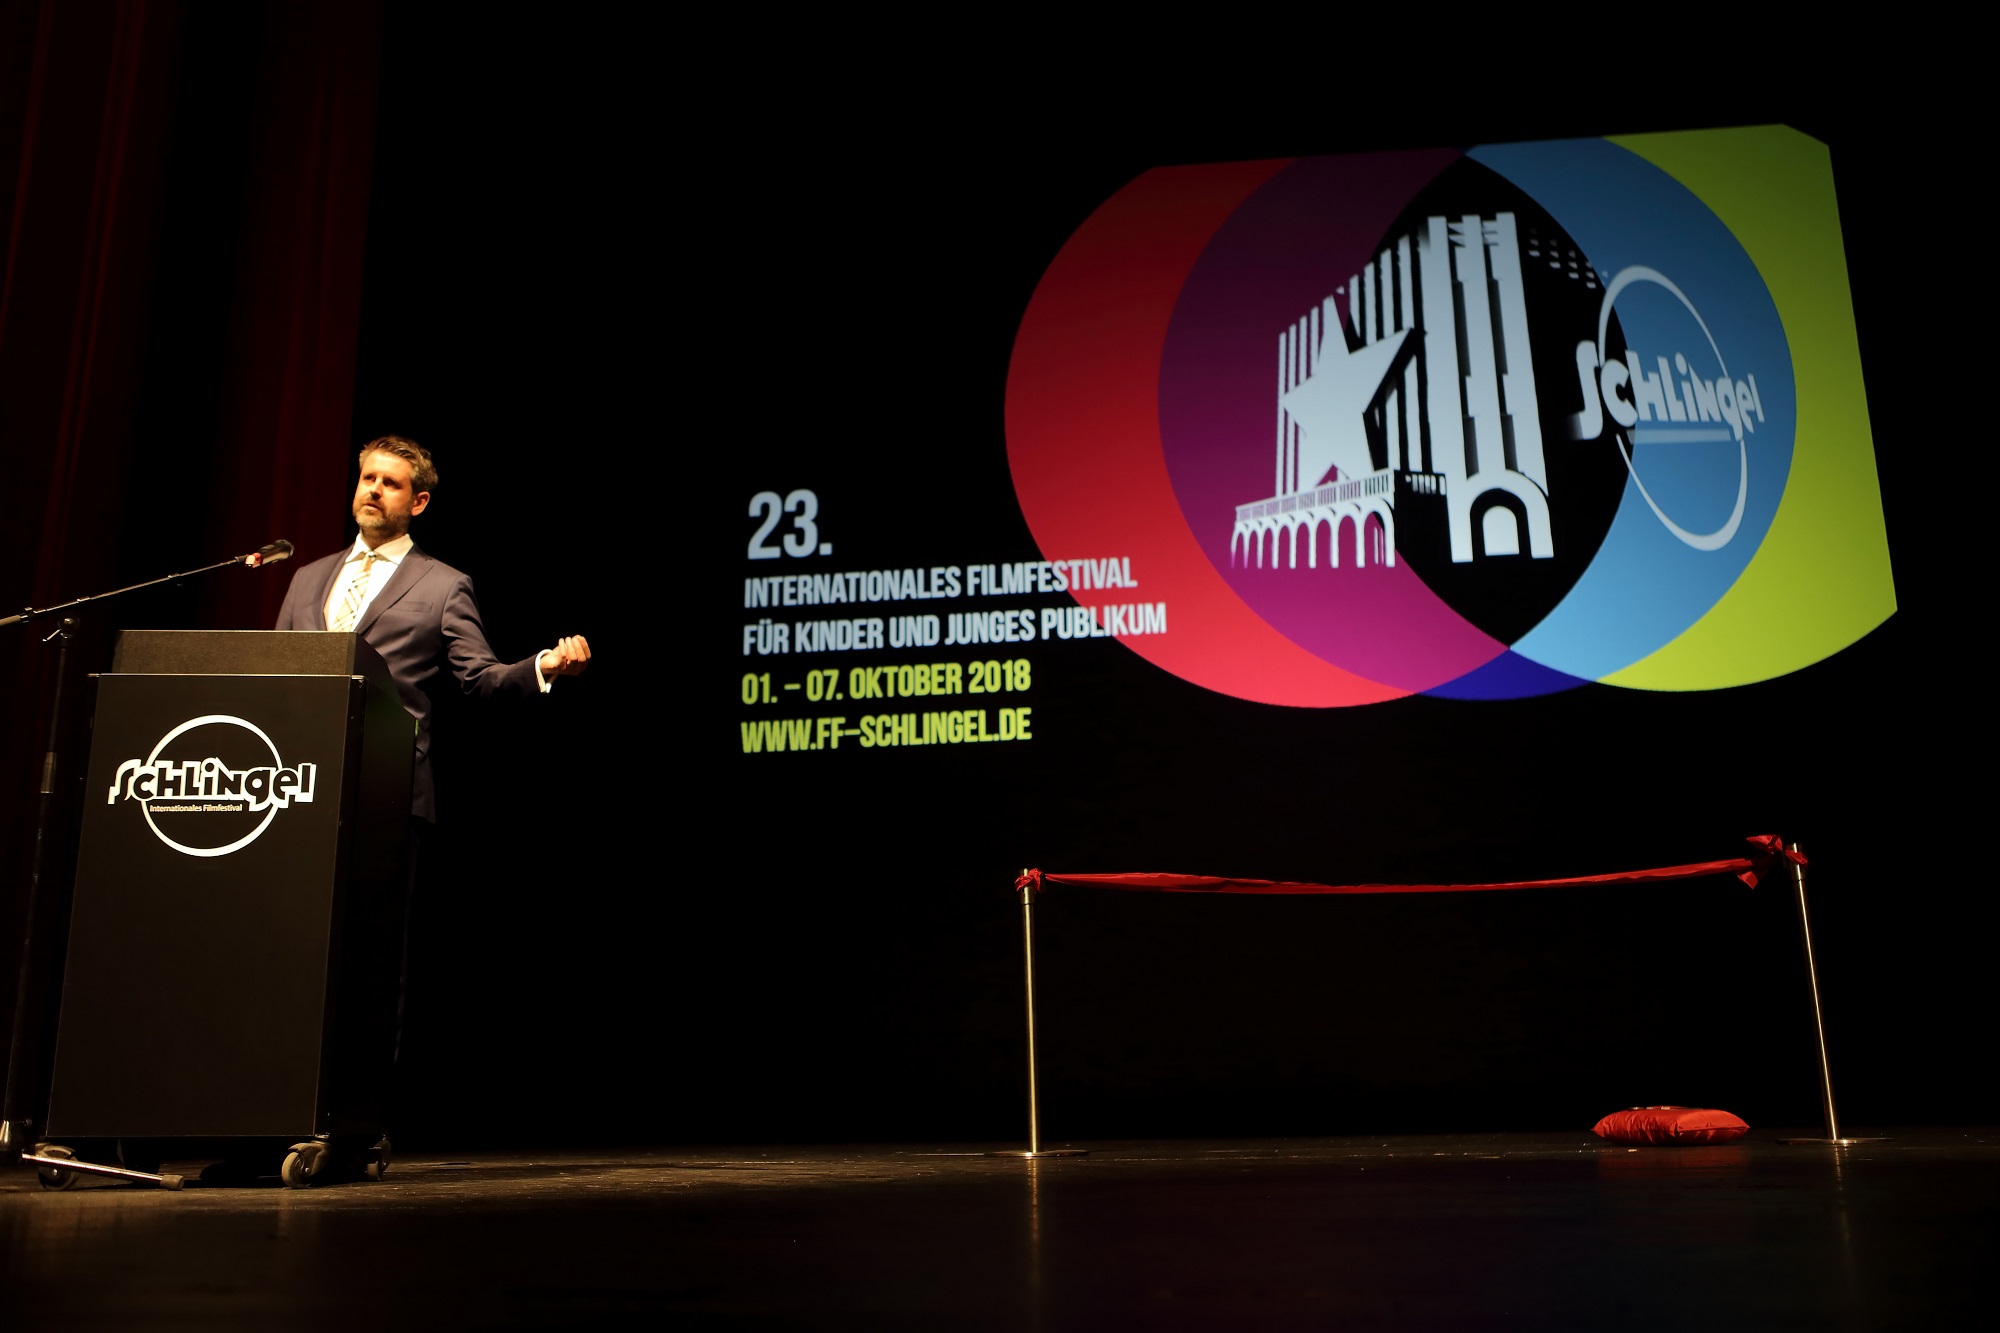 isländischer Botschafter spricht bei Festivaleröffnung im Opernhaus